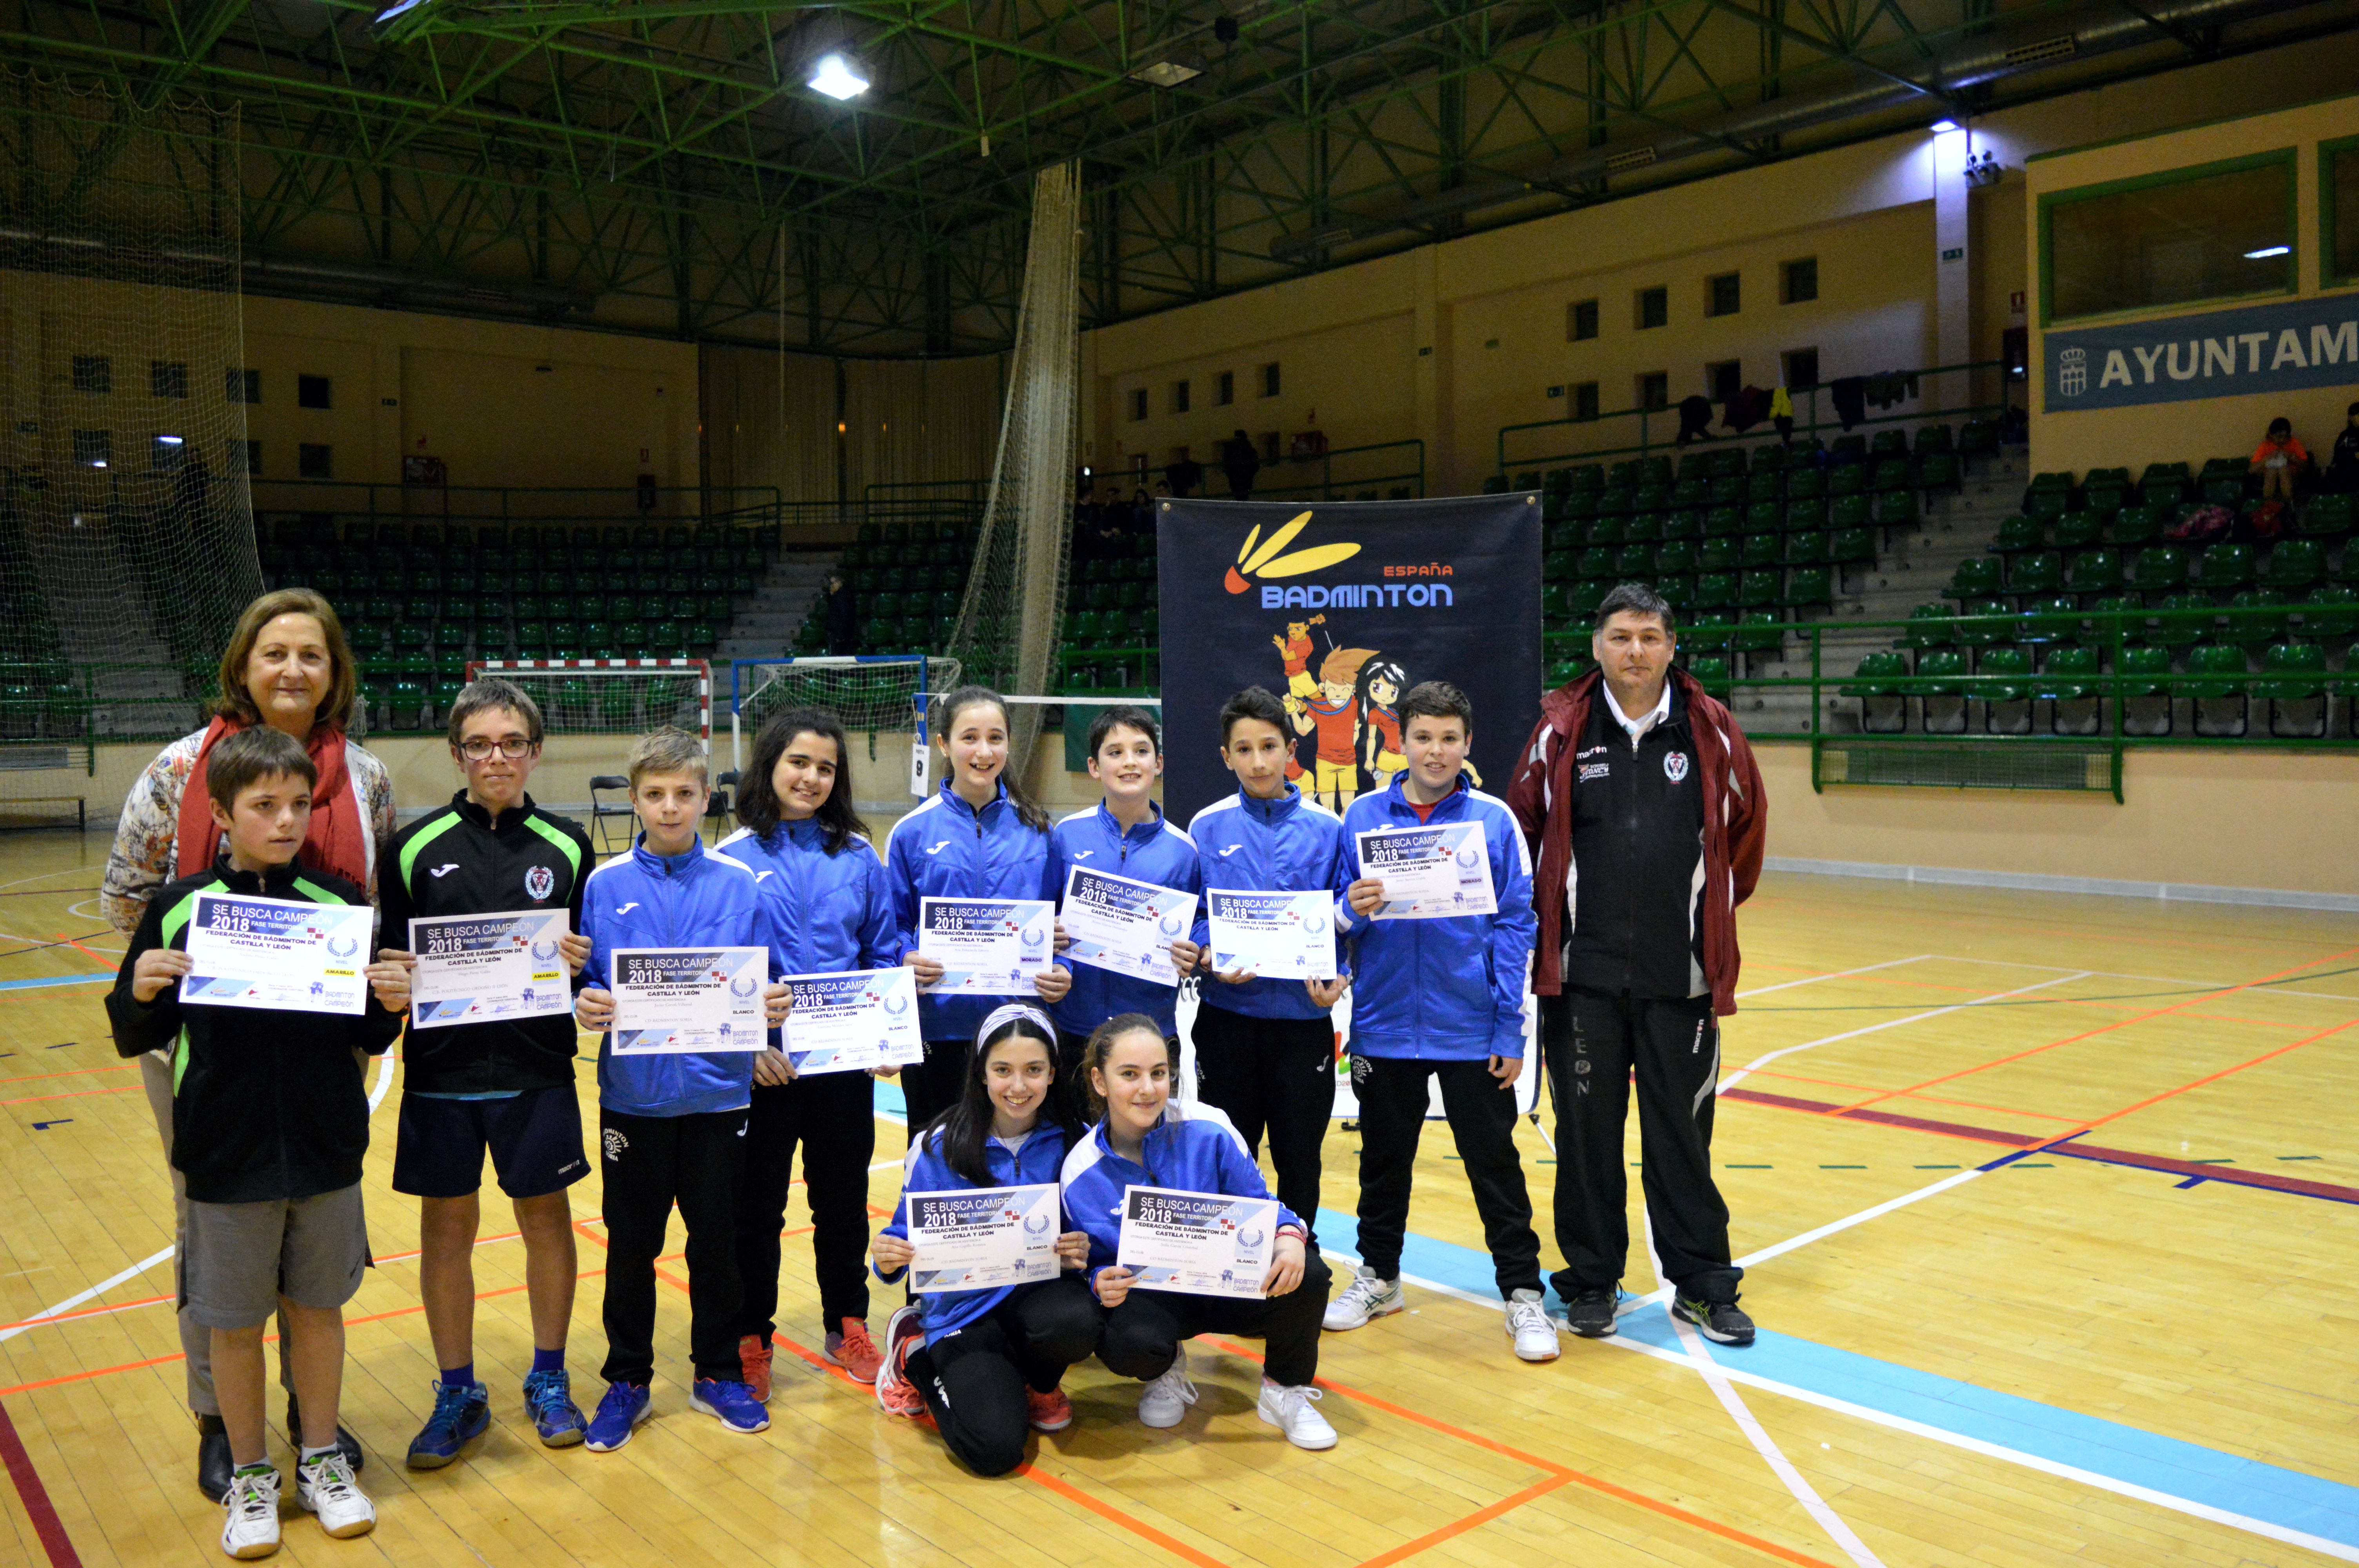 Bádminton: Campeonato de Castilla y León Sub-17, Sub-15 y Sub-13 dobles